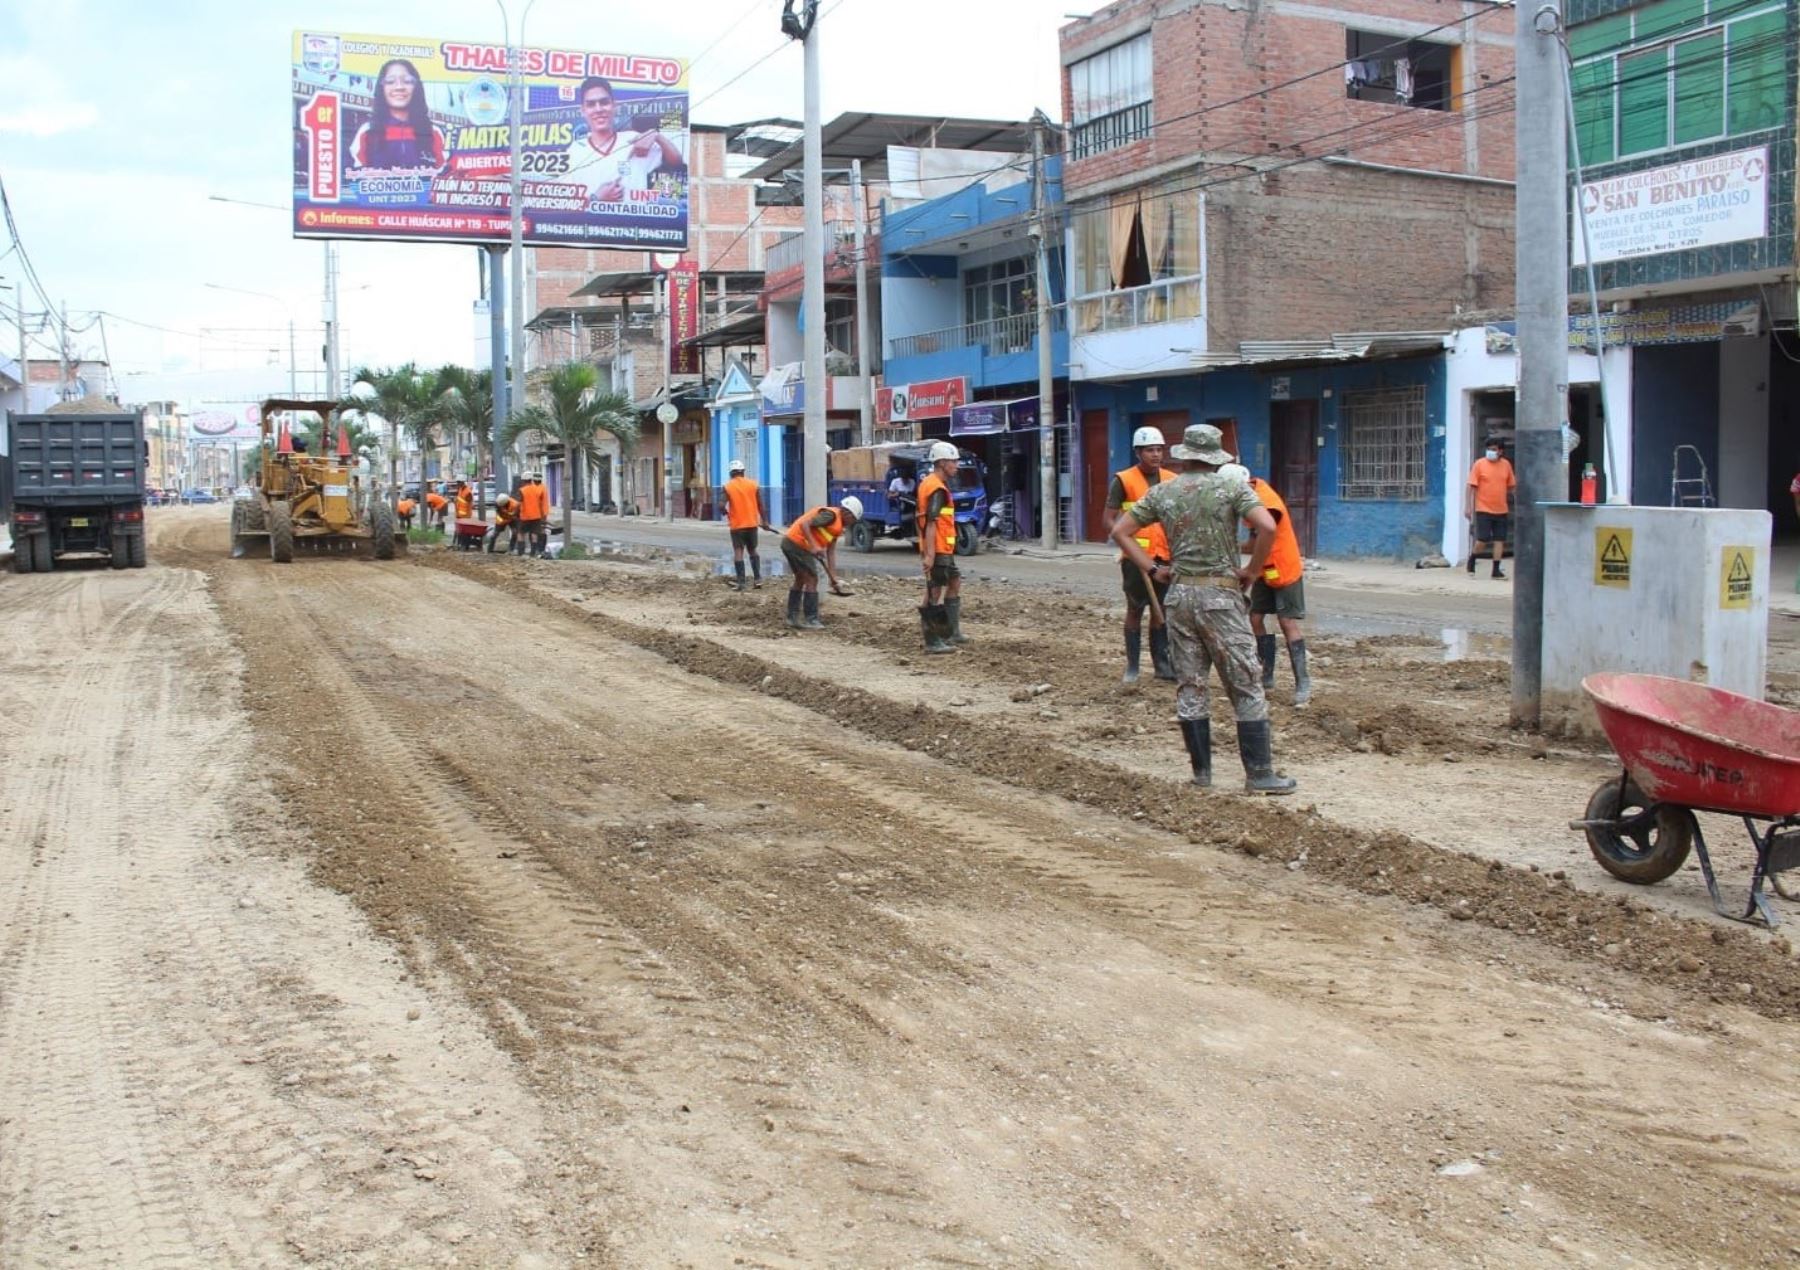 Batallón de Ingenieros del Ejército del Perú inició esta mañana los trabajos para rehabilitar la avenida Tumbes, la principal vía de la ciudad de Tumbes. Foto: Milagros Rodríguez.